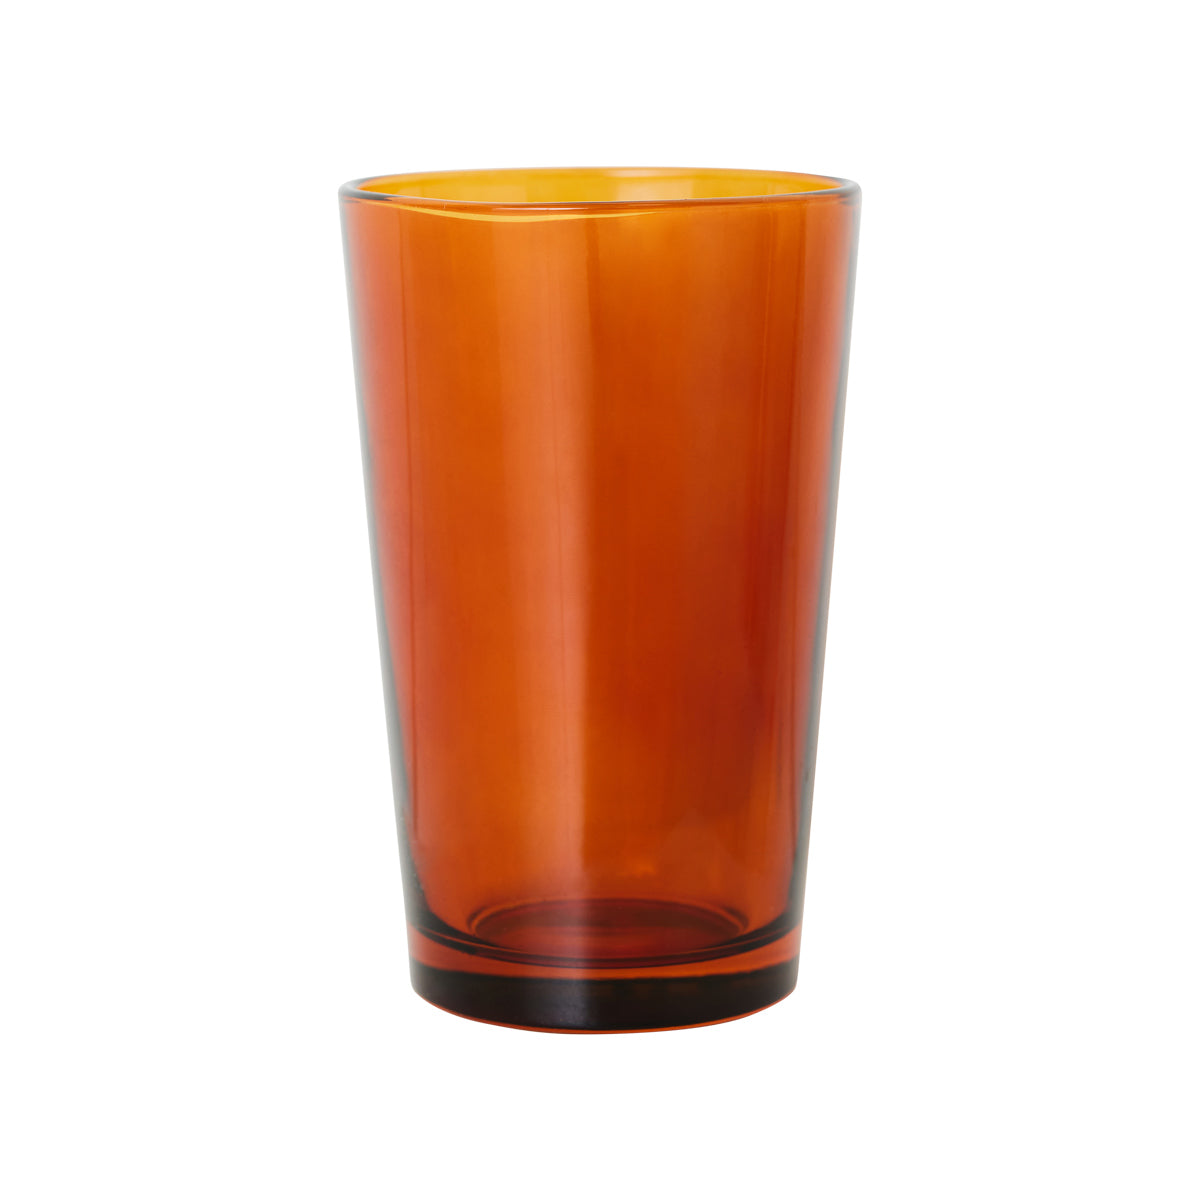 70s Glassware: Tea Glasses Amber Brown (Set of 4)